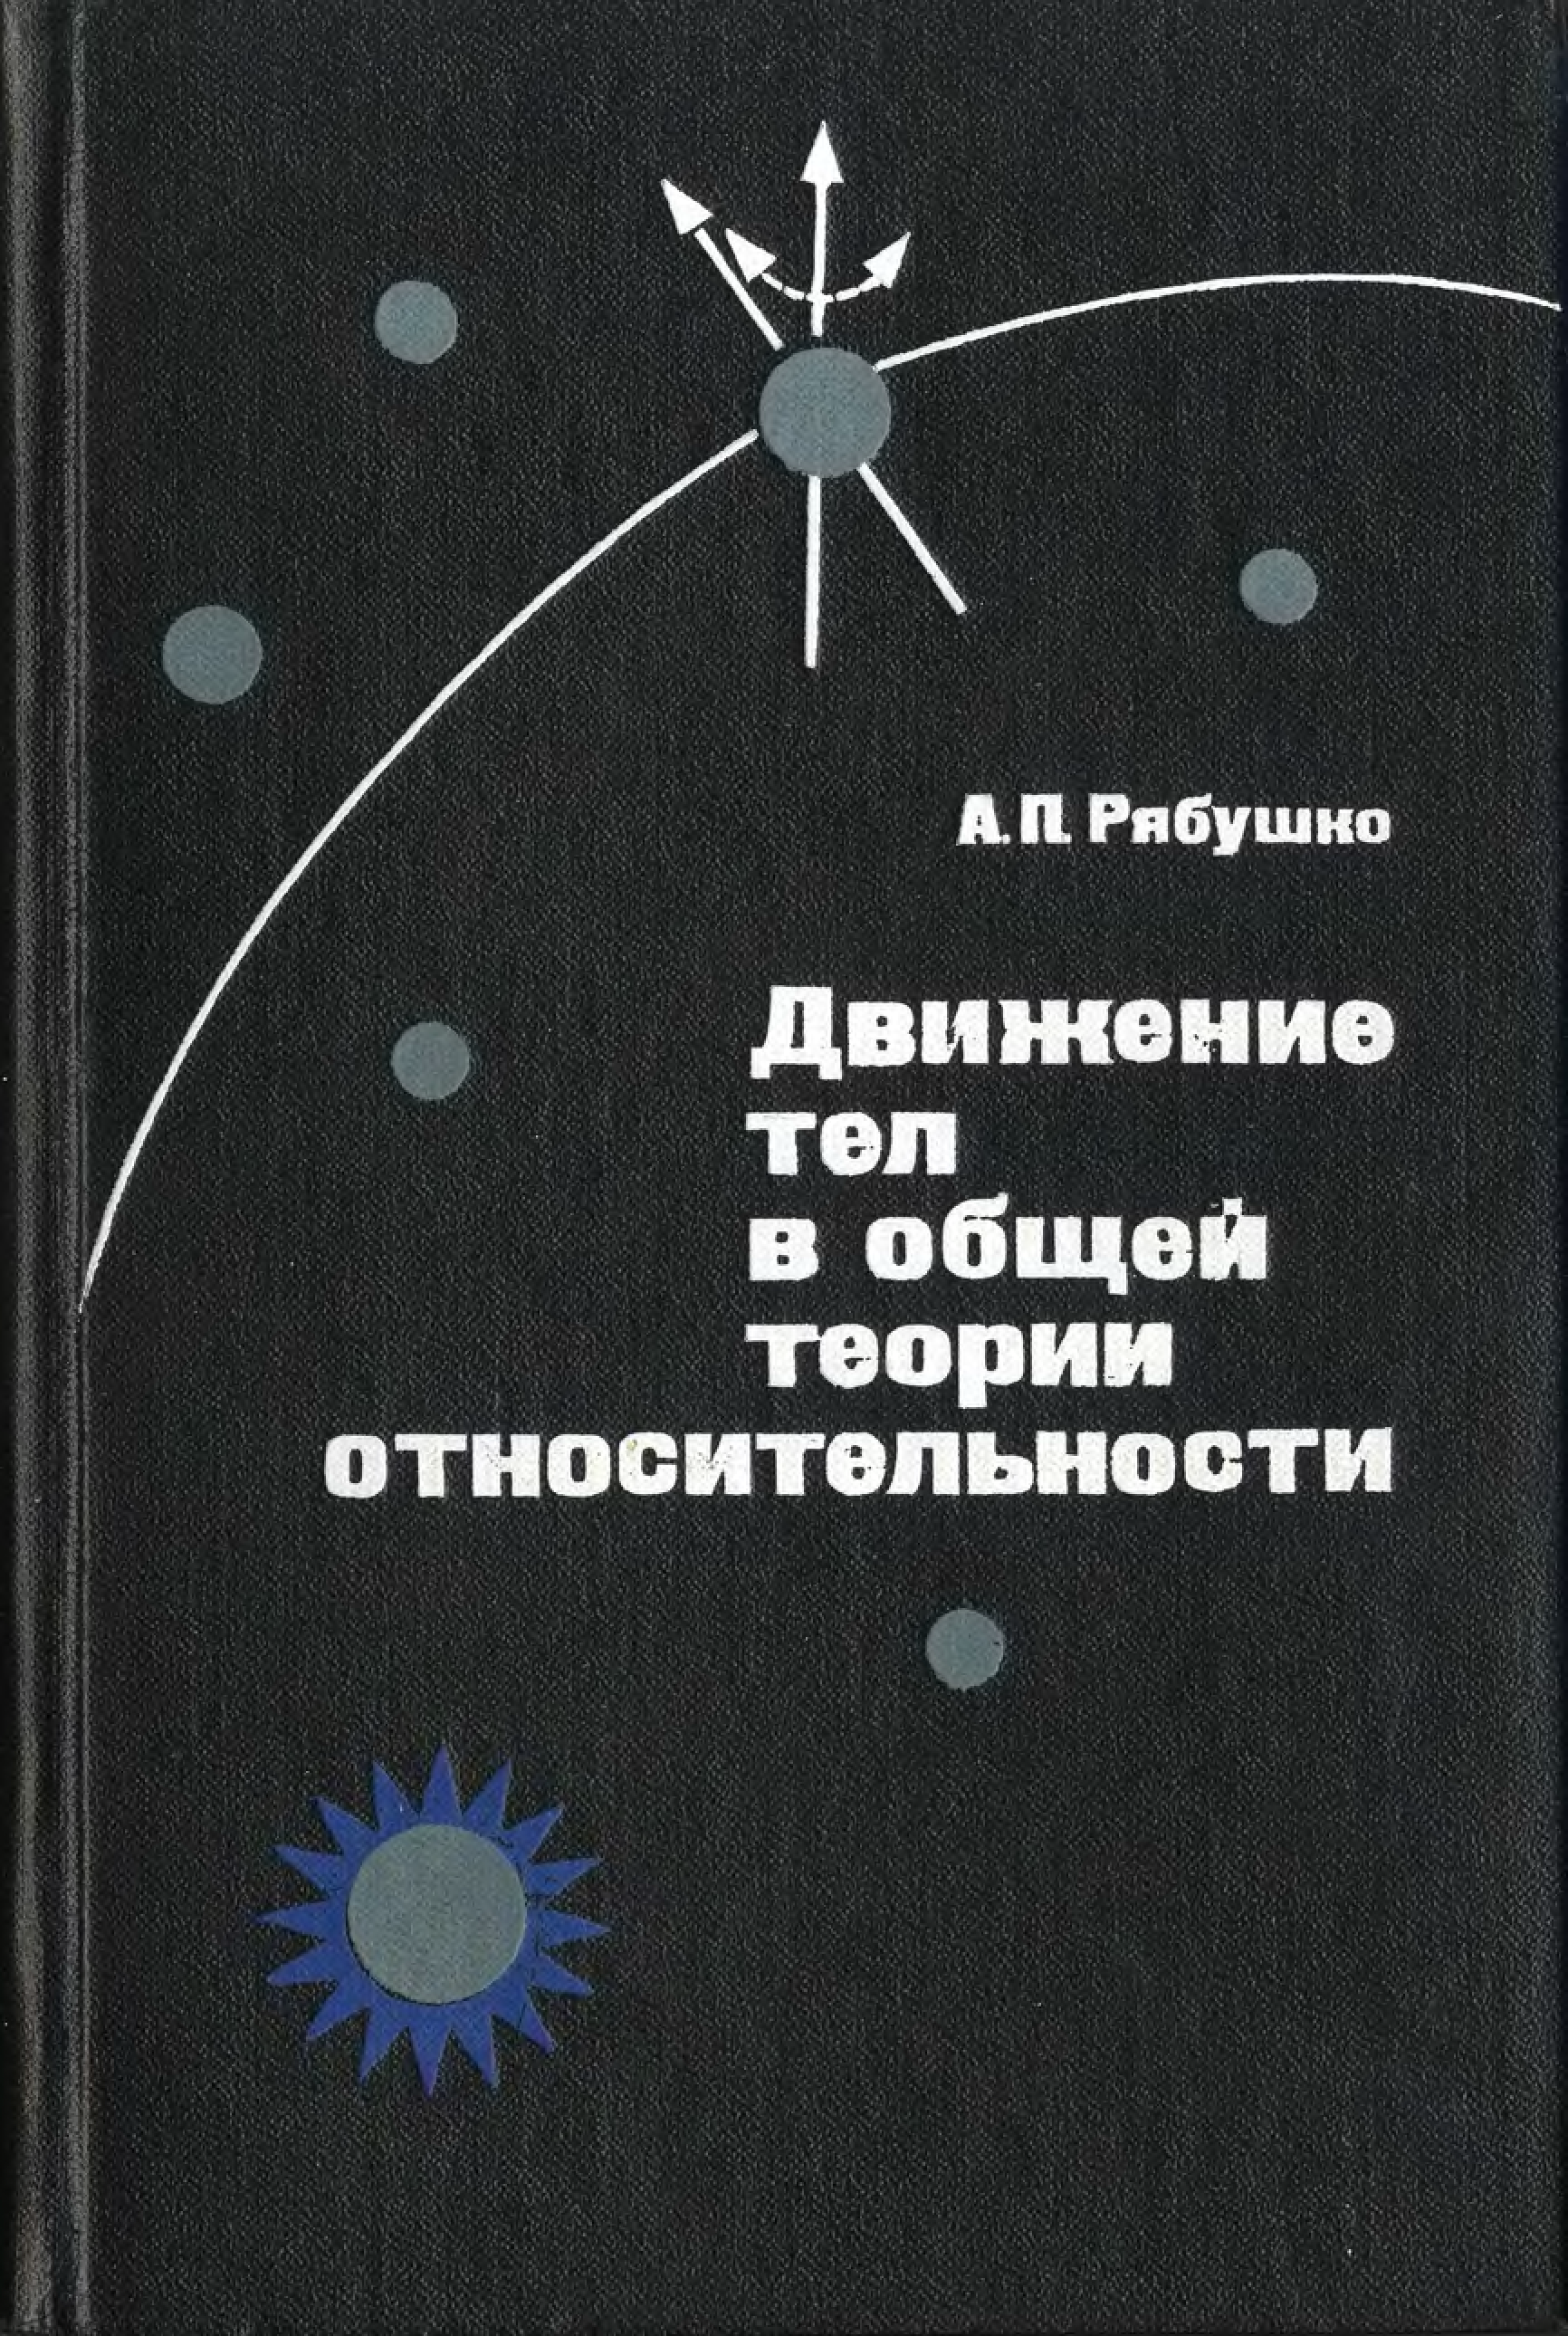 Книга по физике теория